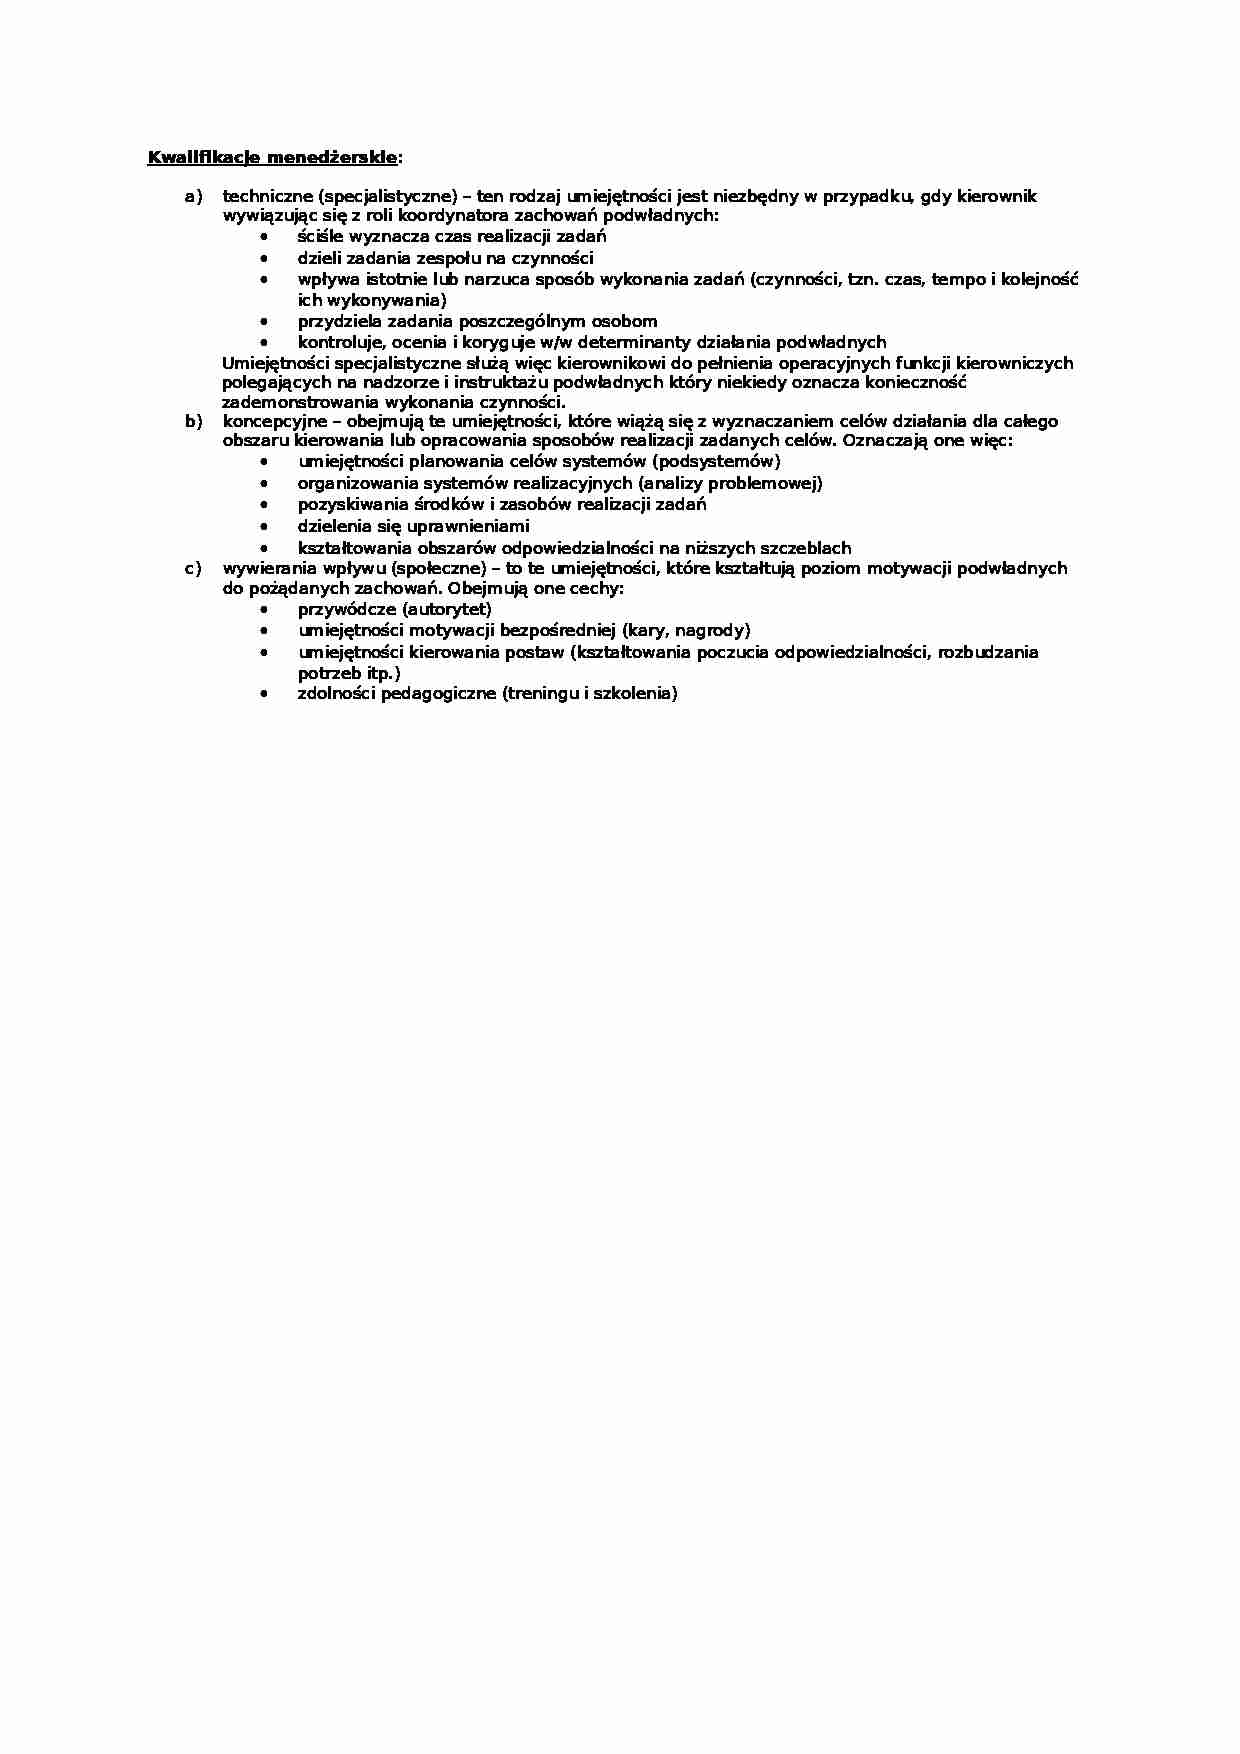 Kwalifikacje menedżerskie - omówienie - strona 1